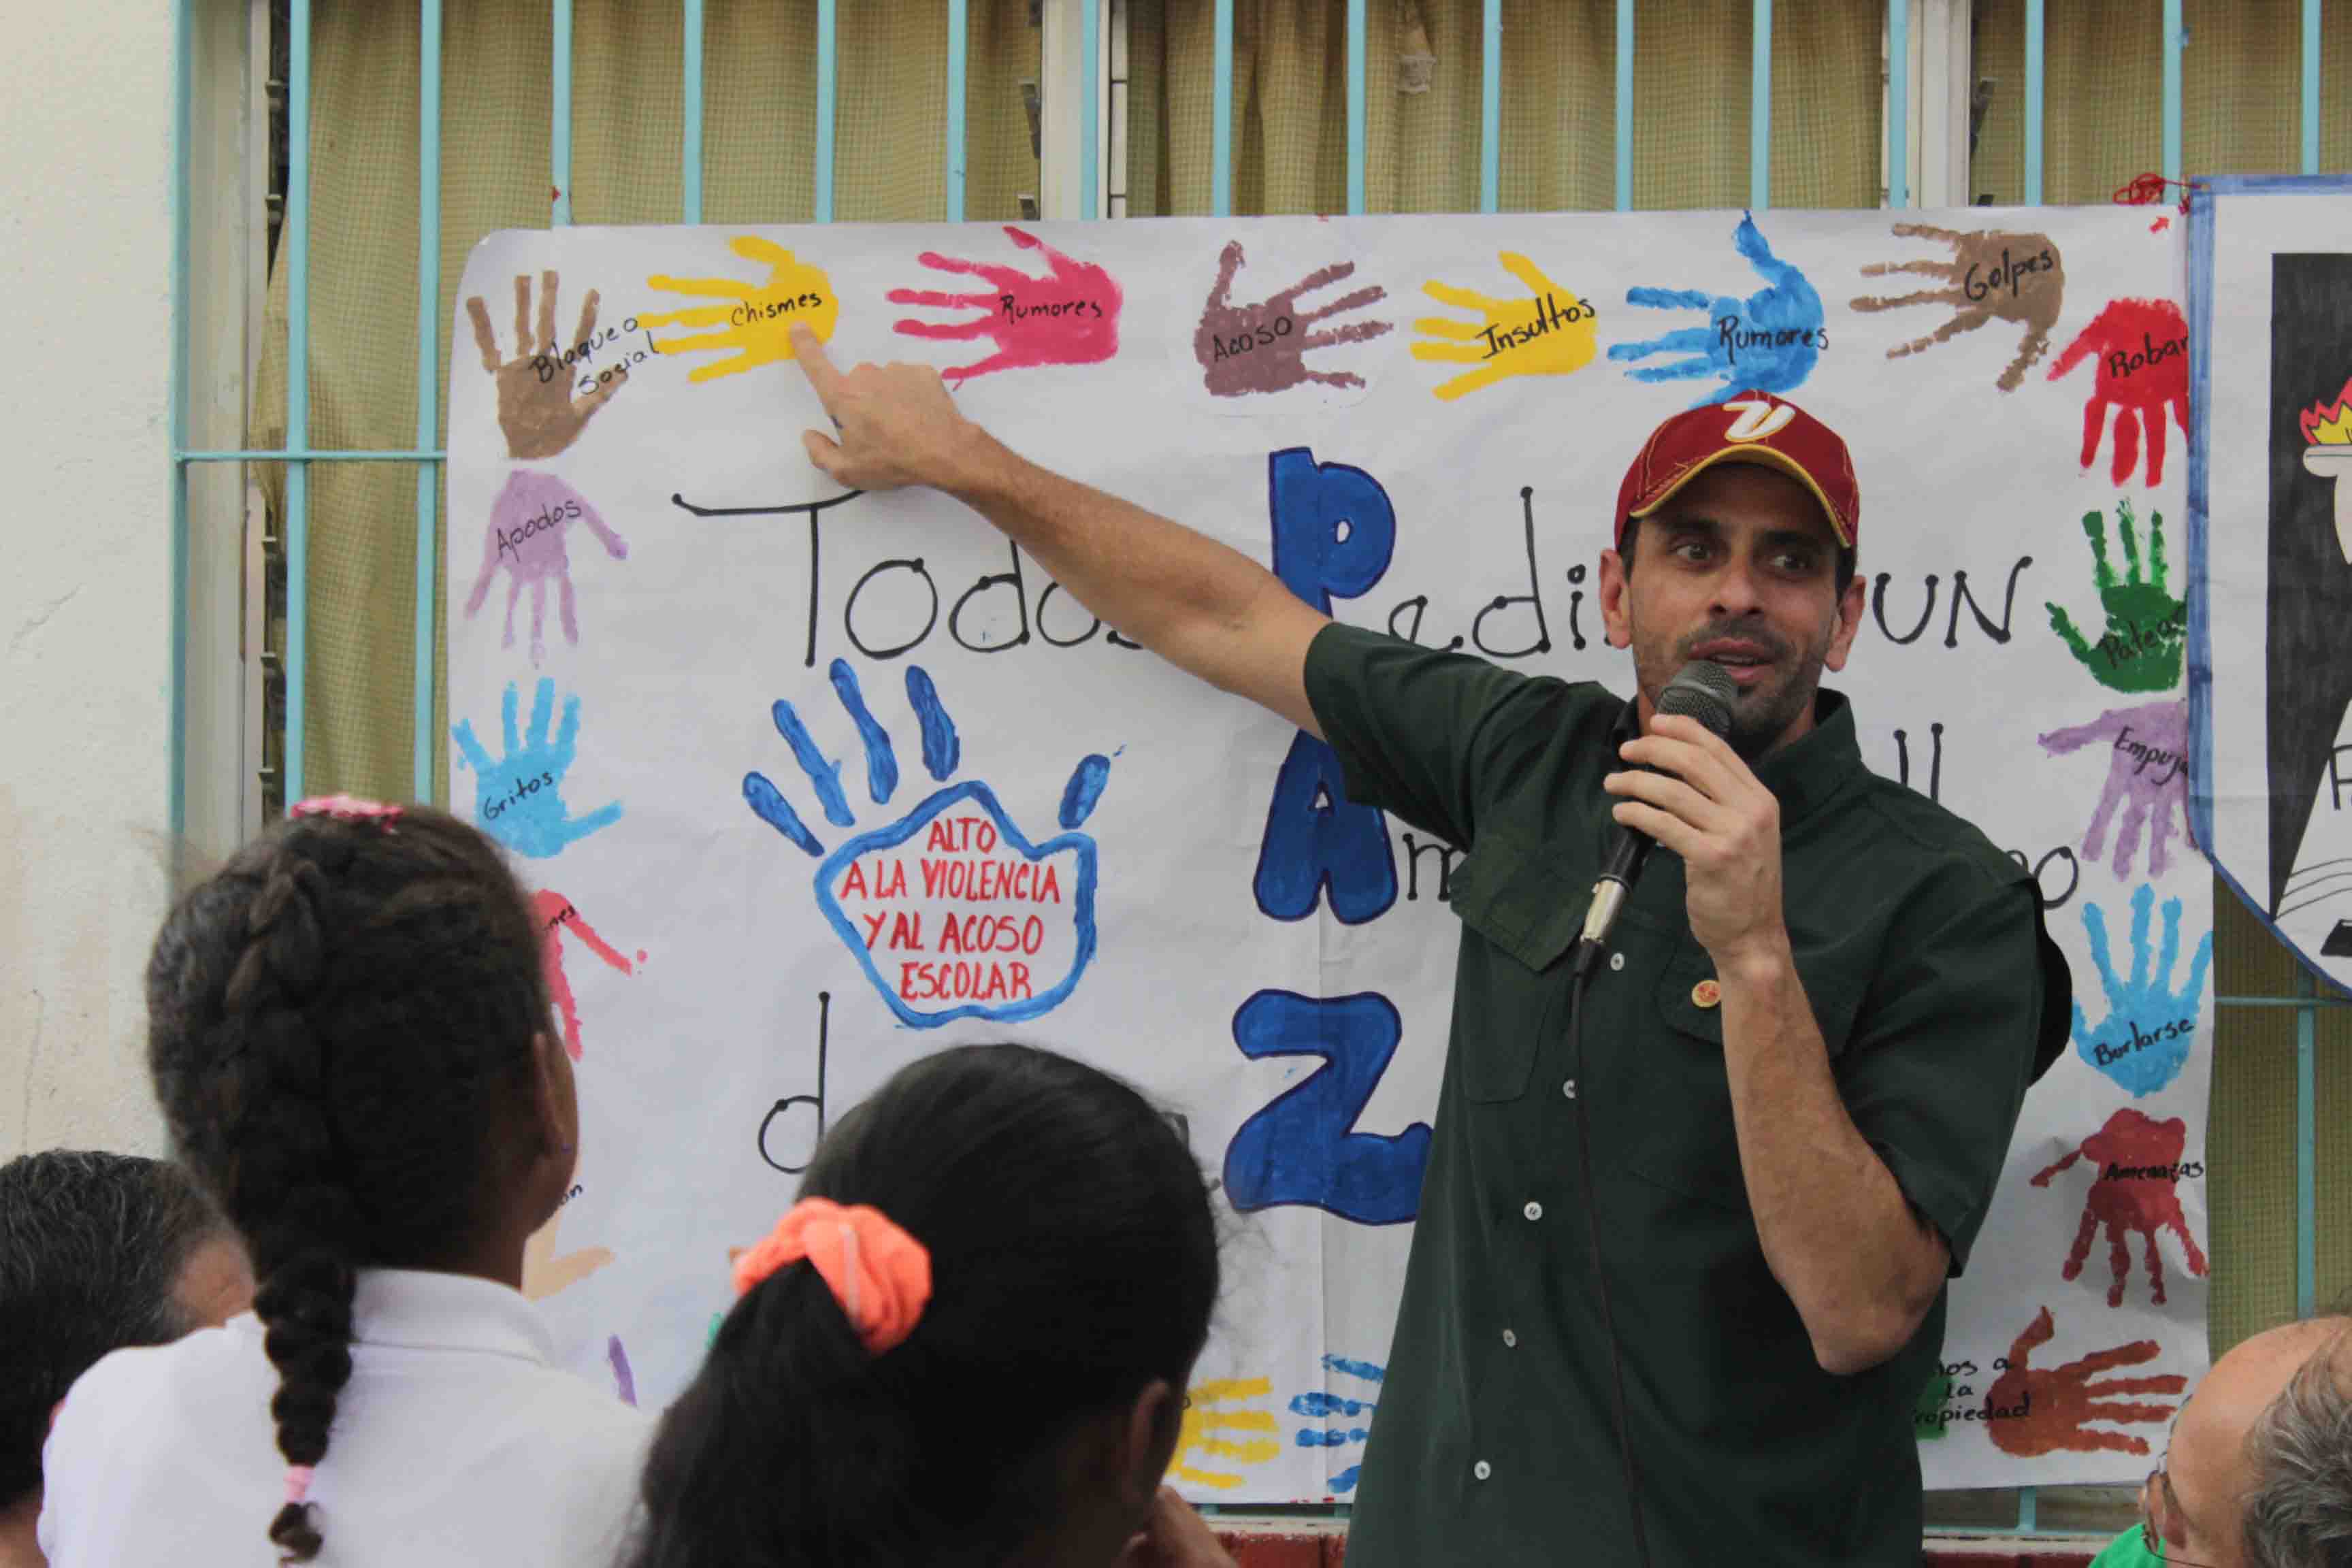 Capriles: Mientras unos queremos derrotar la violencia, otros quieren repartir fusiles